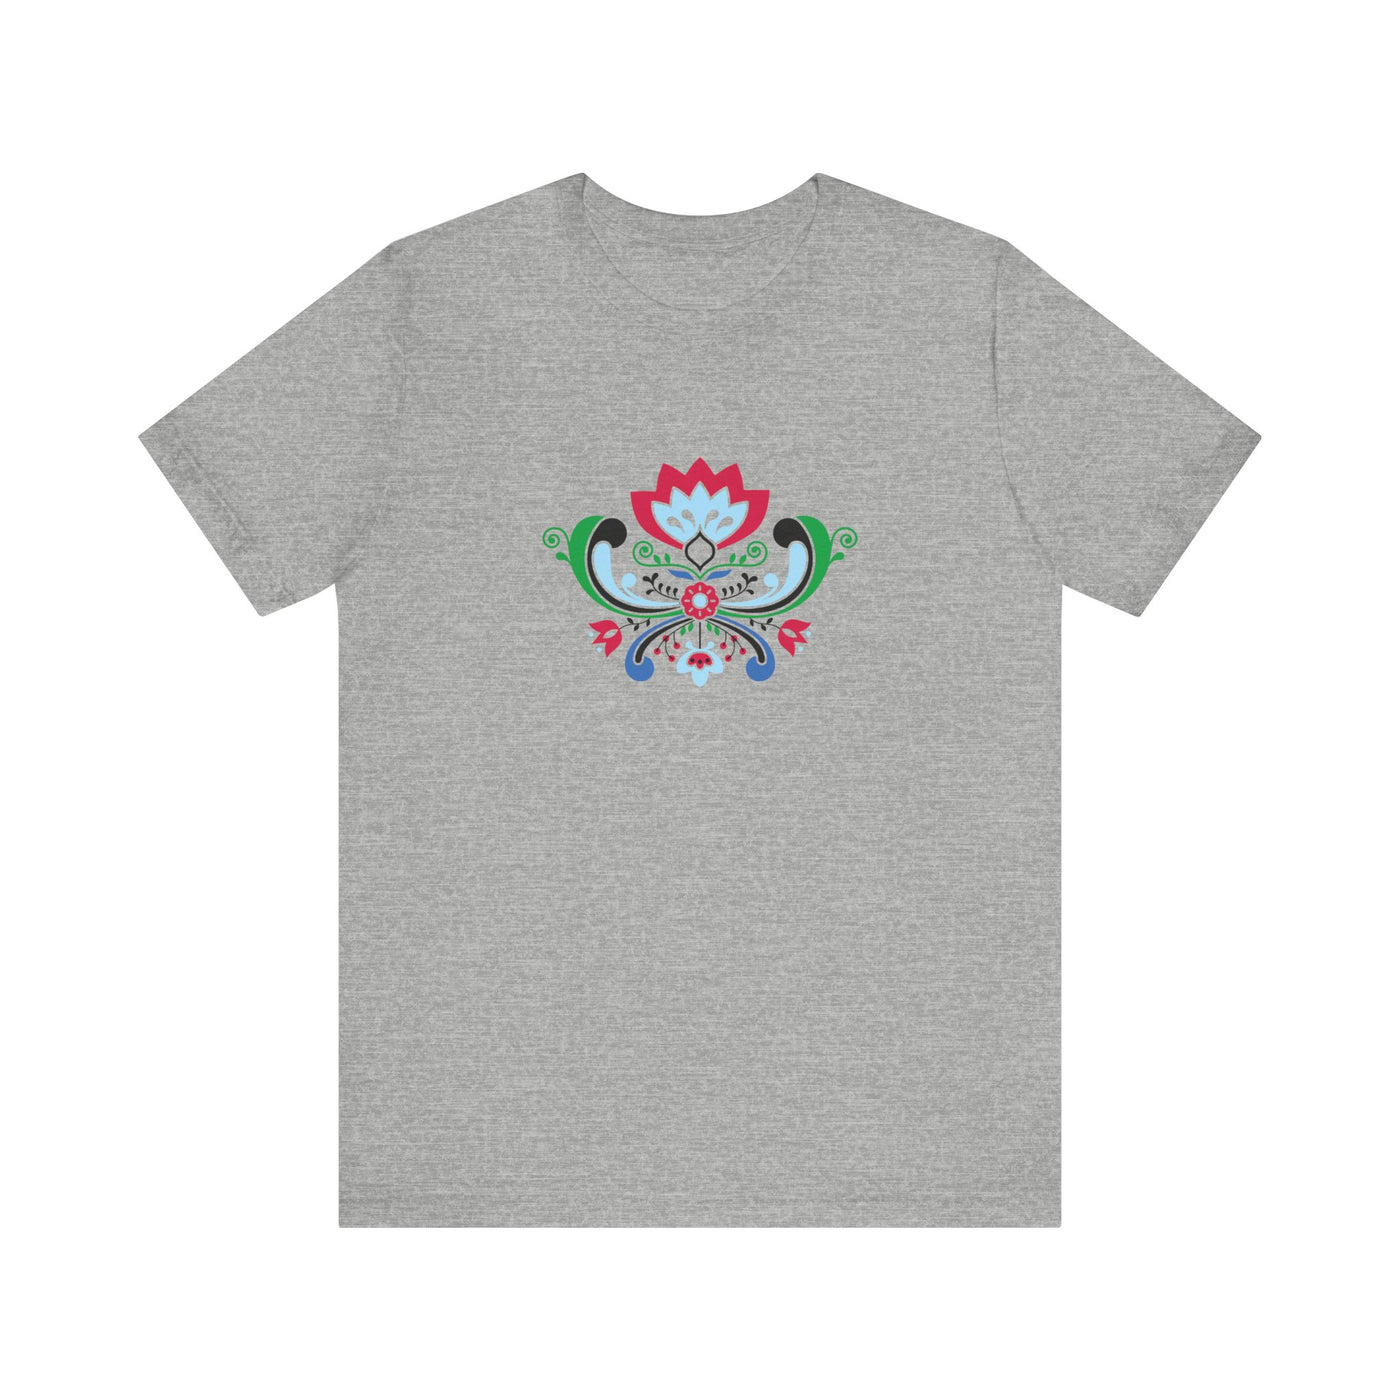 Midsummer Rosemaling Unisex T-Shirt